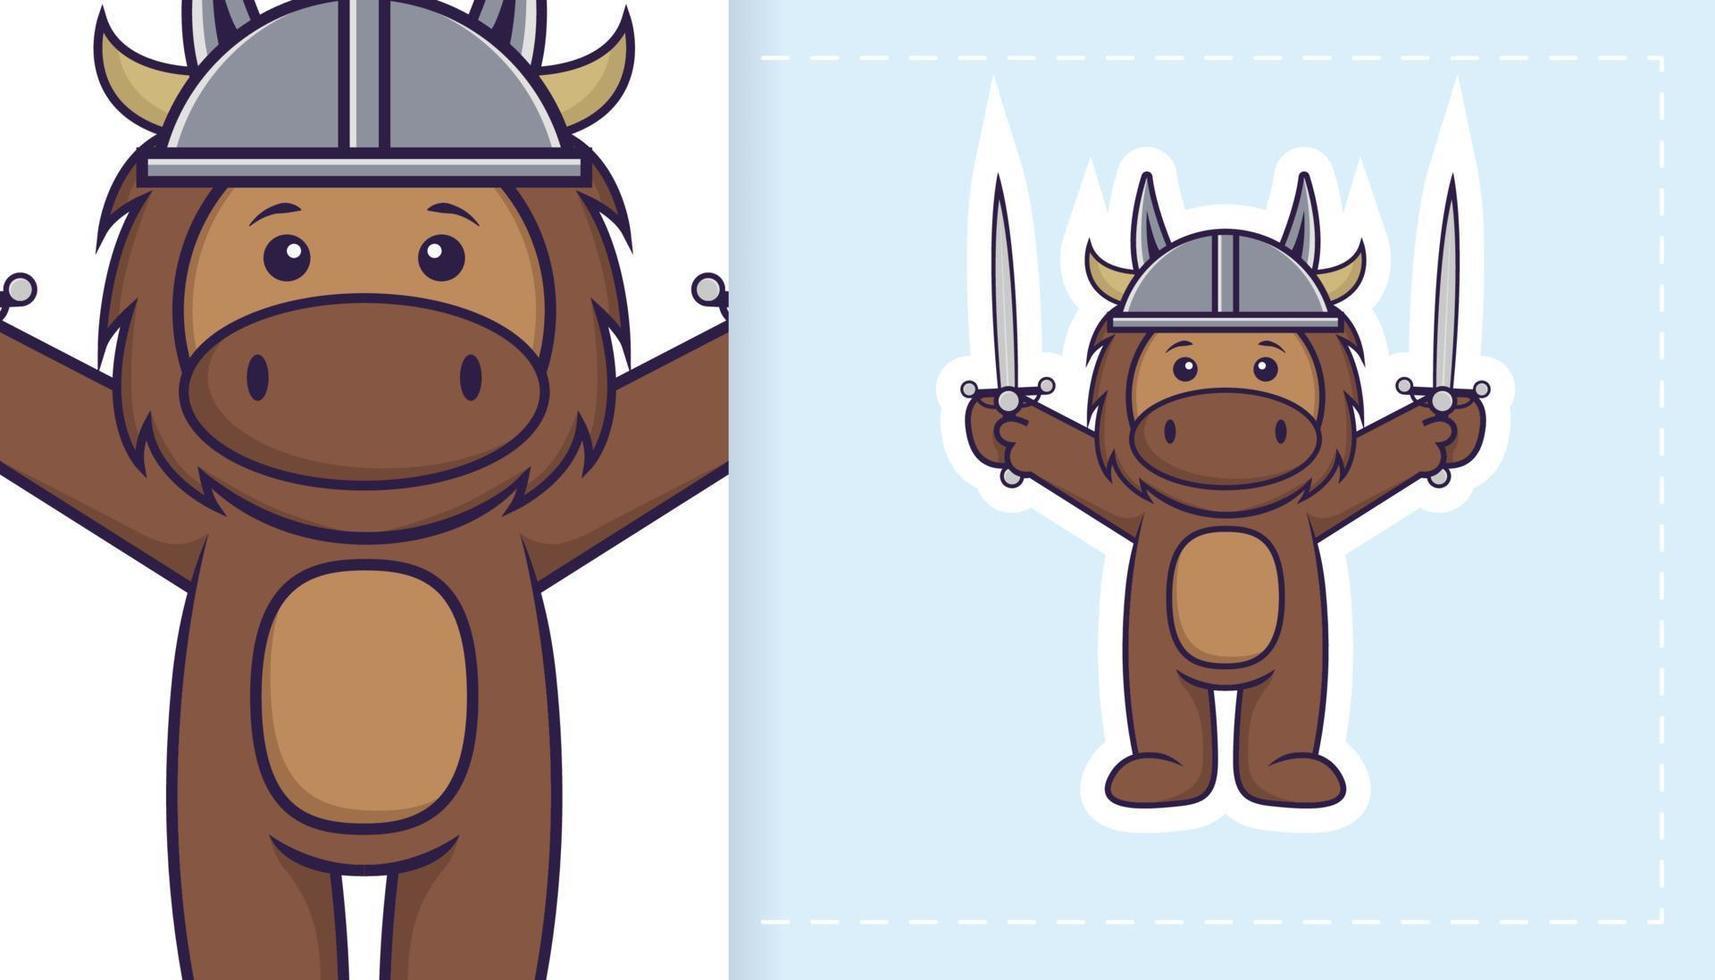 simpatico personaggio mascotte toro. può essere utilizzato per adesivi, toppe, tessuti, carta. illustrazione vettoriale